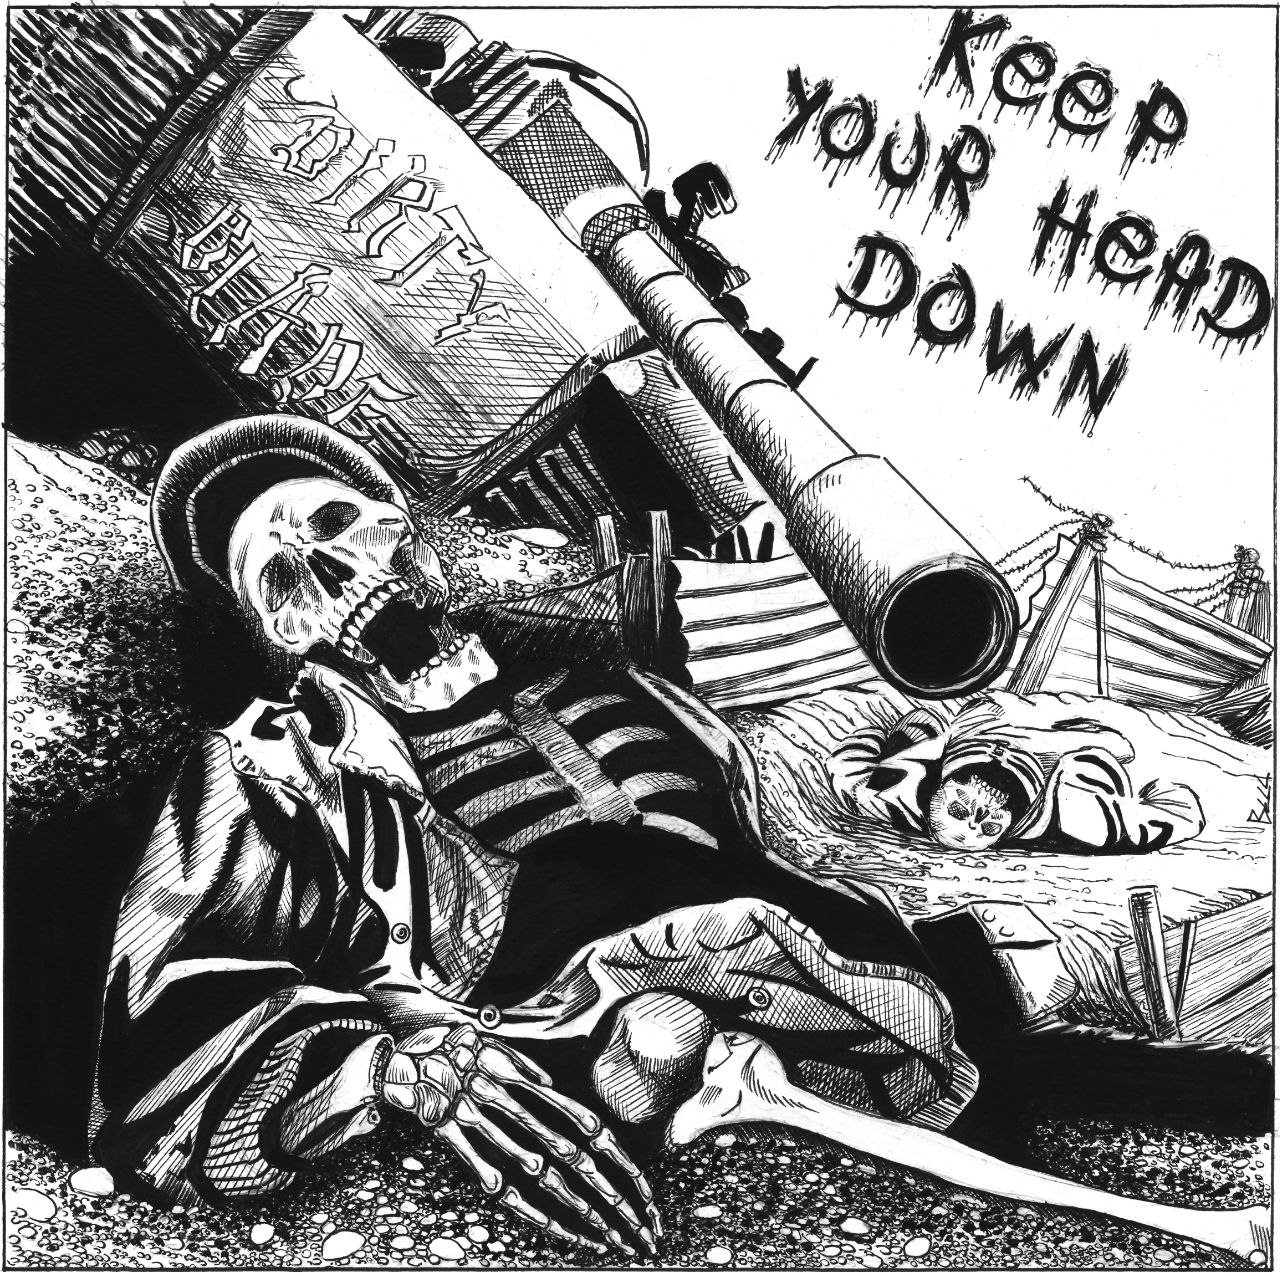 I Dirty Blade pubblicano il nuovo brano “Keep Your Head Down”